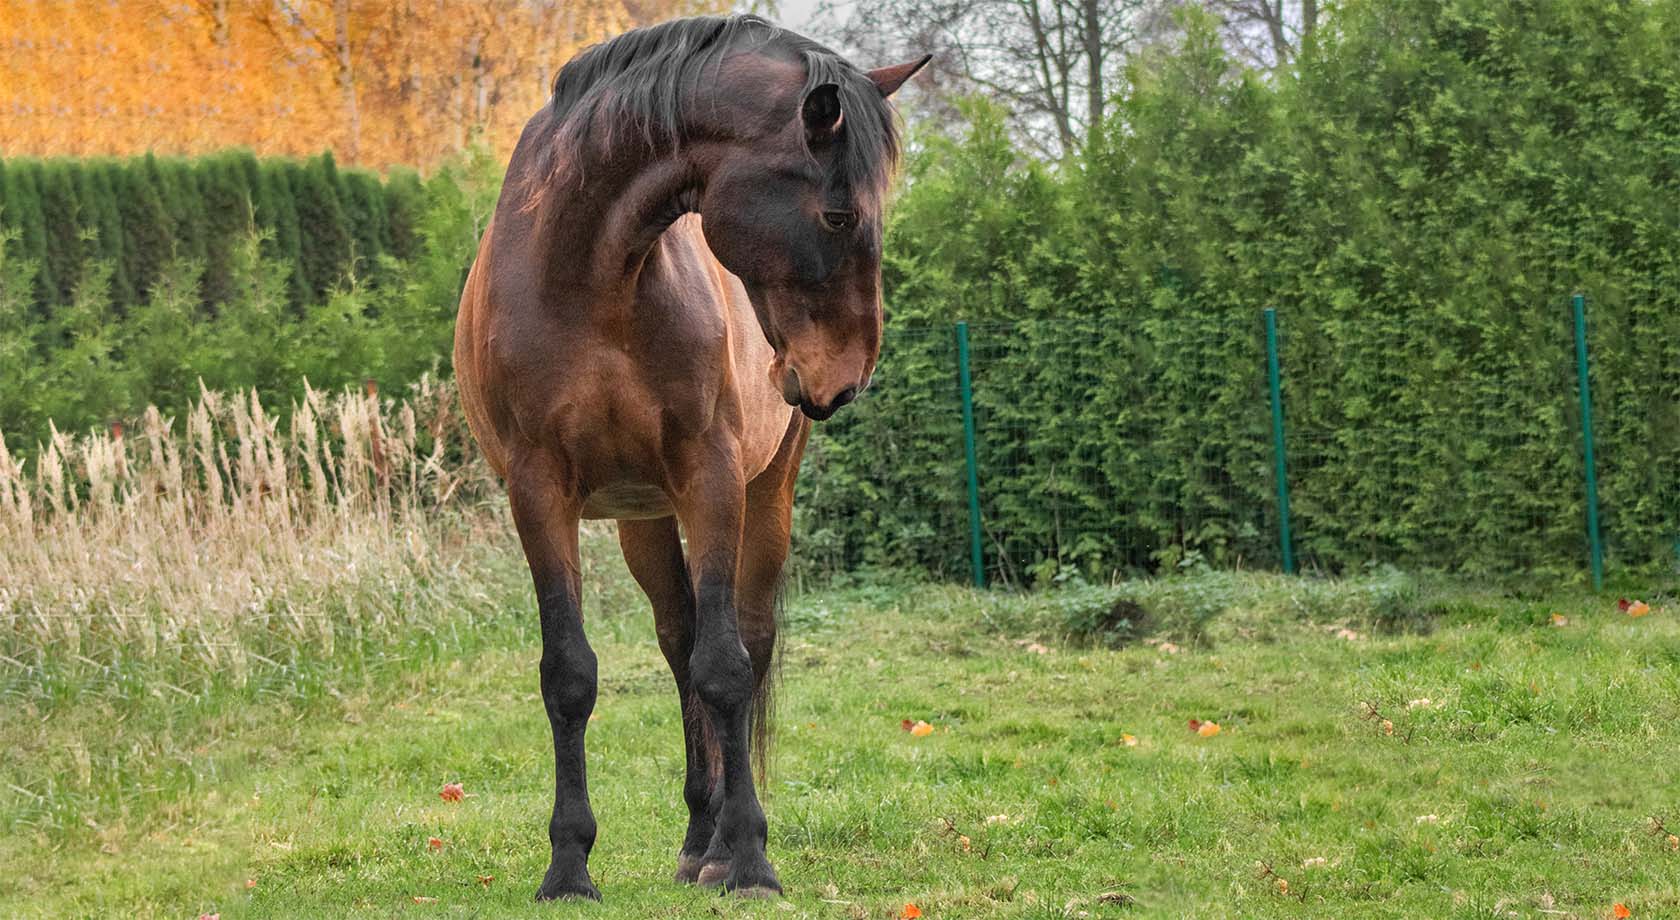 Standing horse. Image © skumer / Adobe Stock